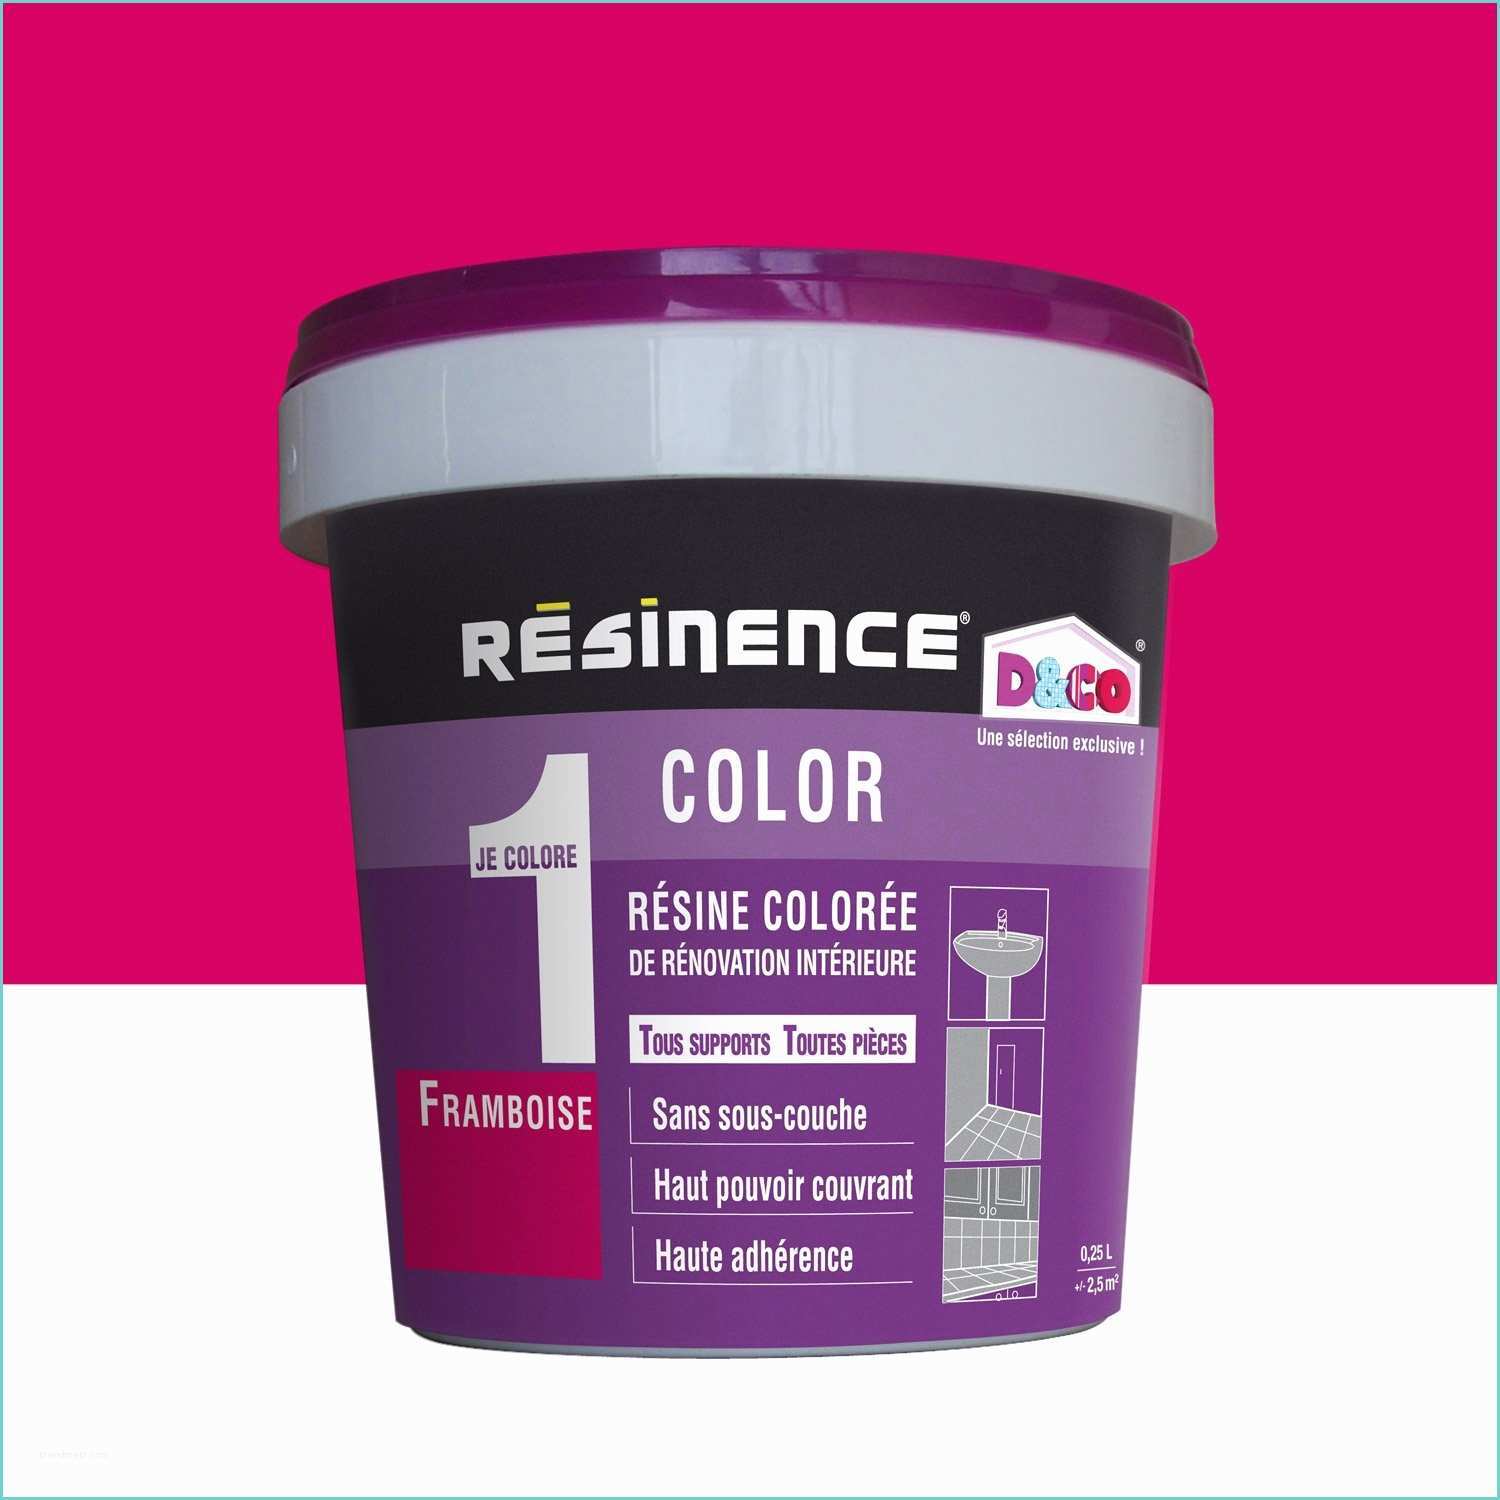 Couleur Gris Violet Résine Colorée Color Resinence Violet Framboise 0 25 L